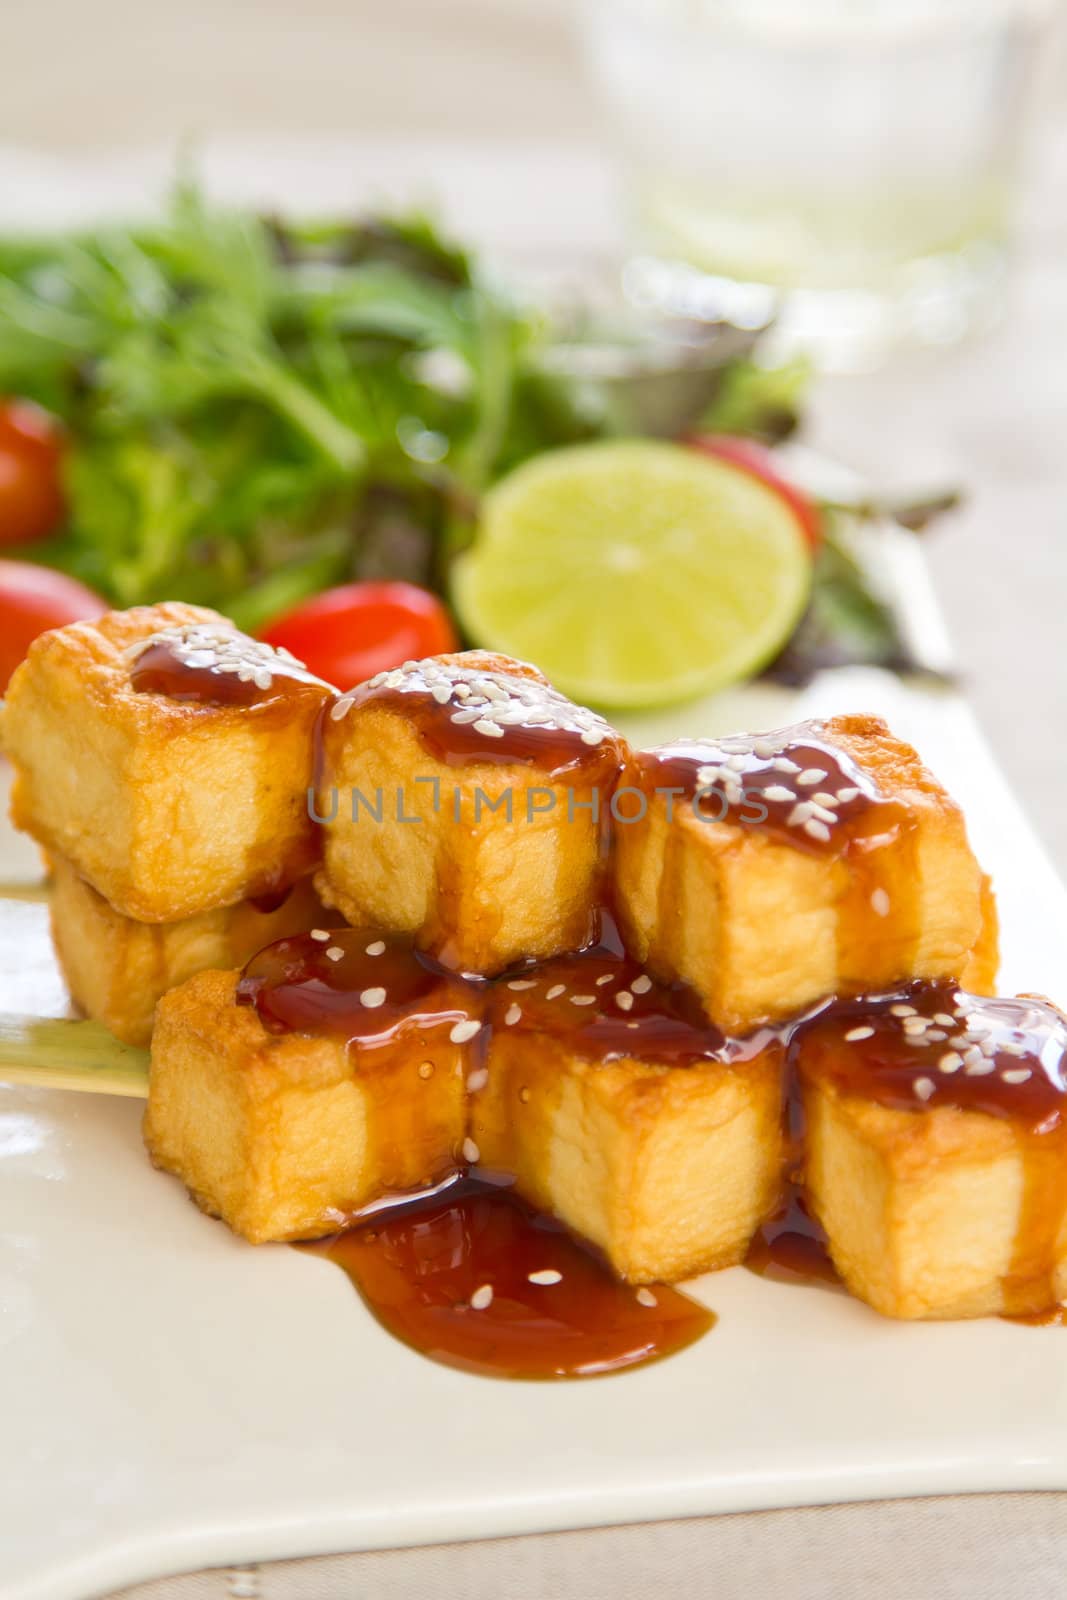 Grilled Tofu with teriyaki sauce and salad